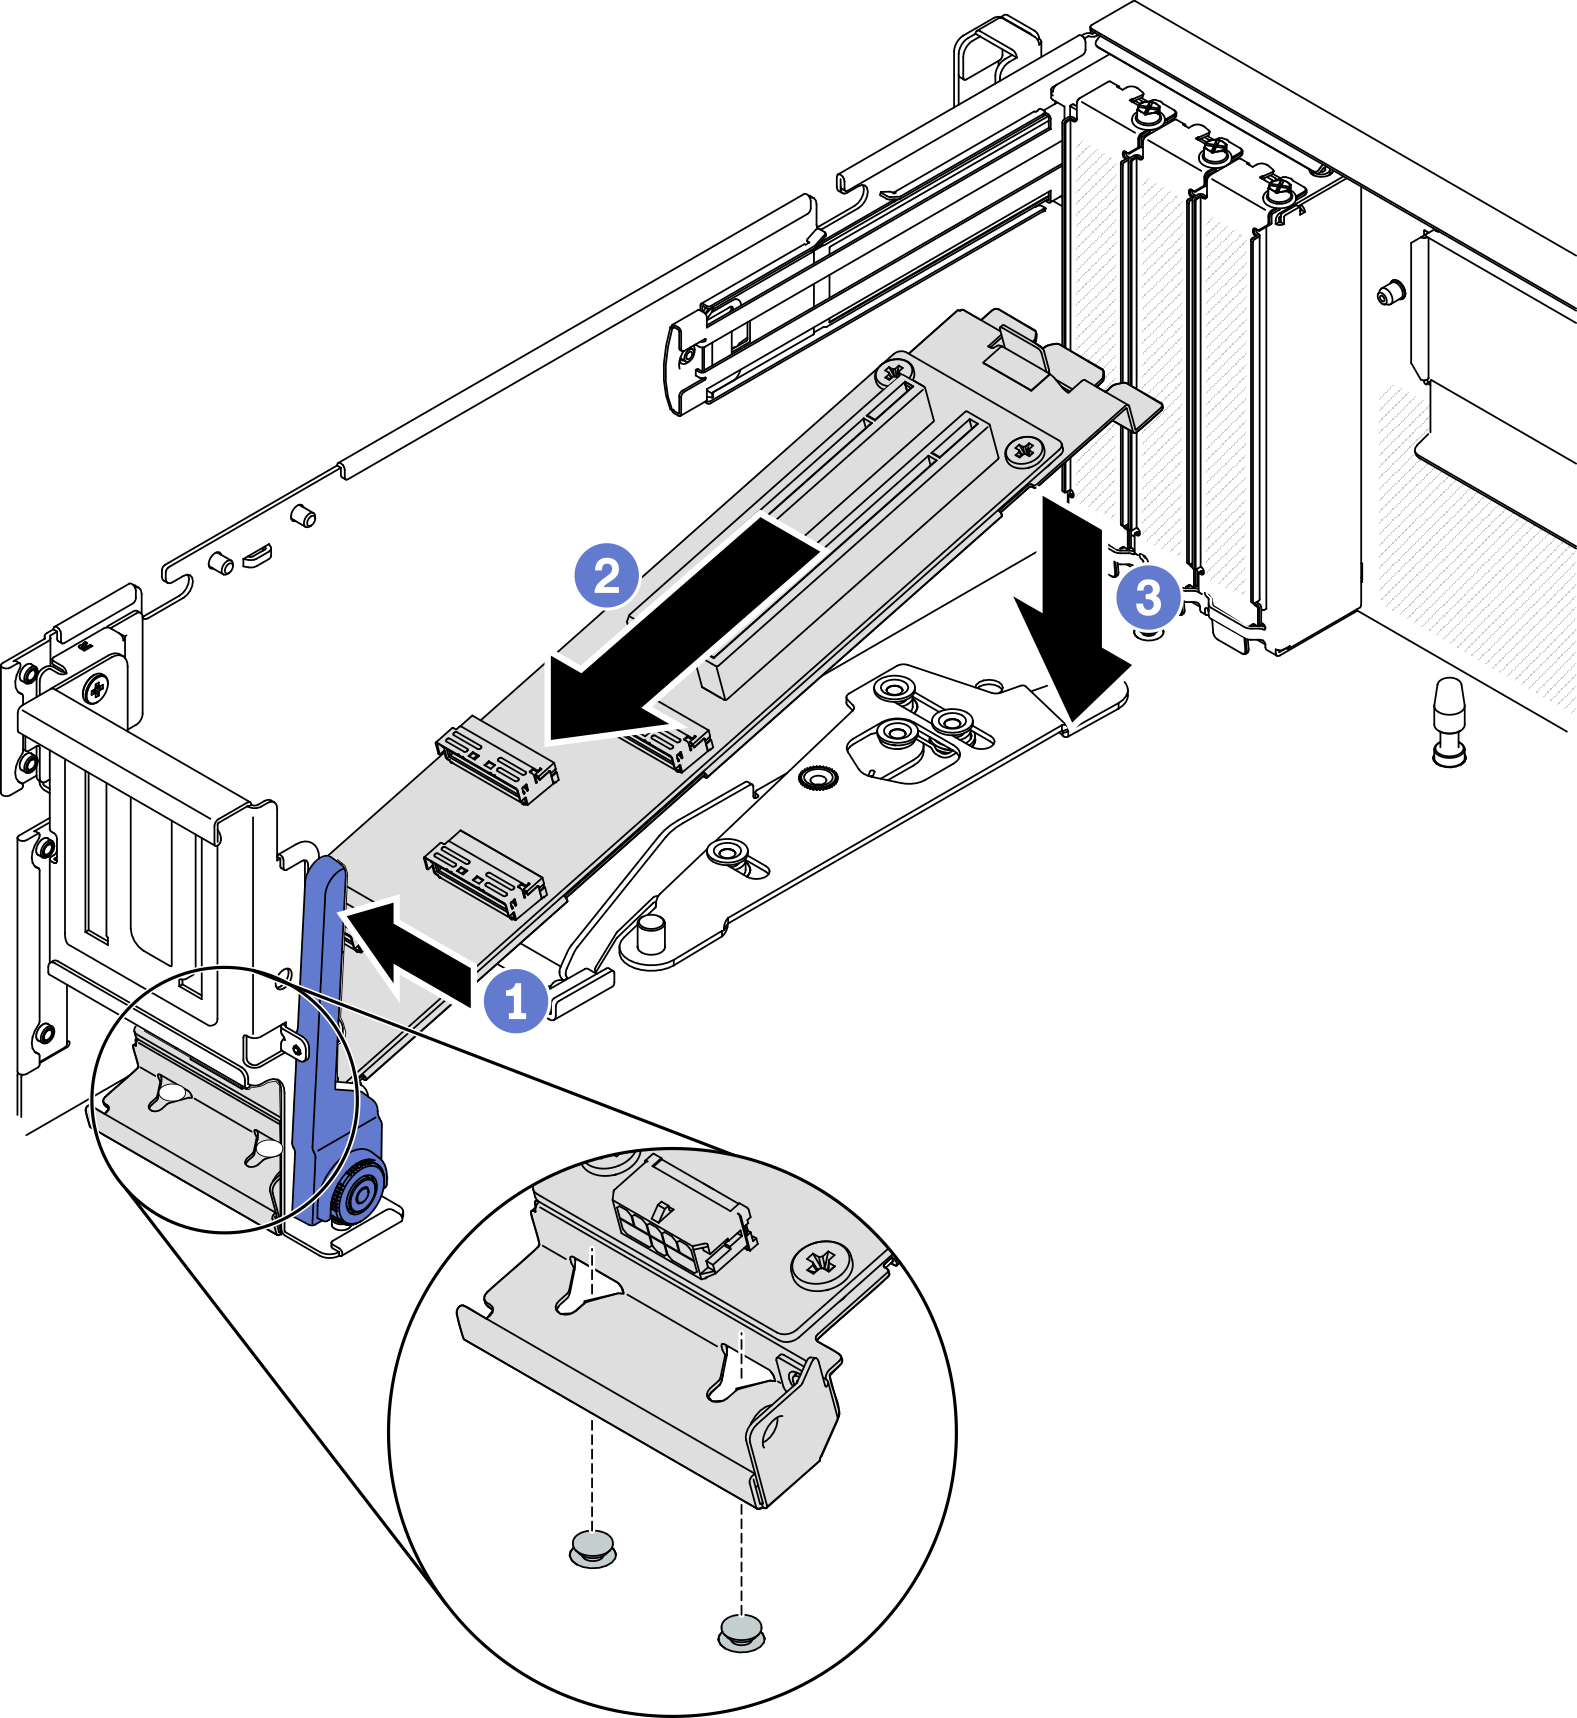 Placing the модуль передней платы расширения ввода-вывода into the chassis